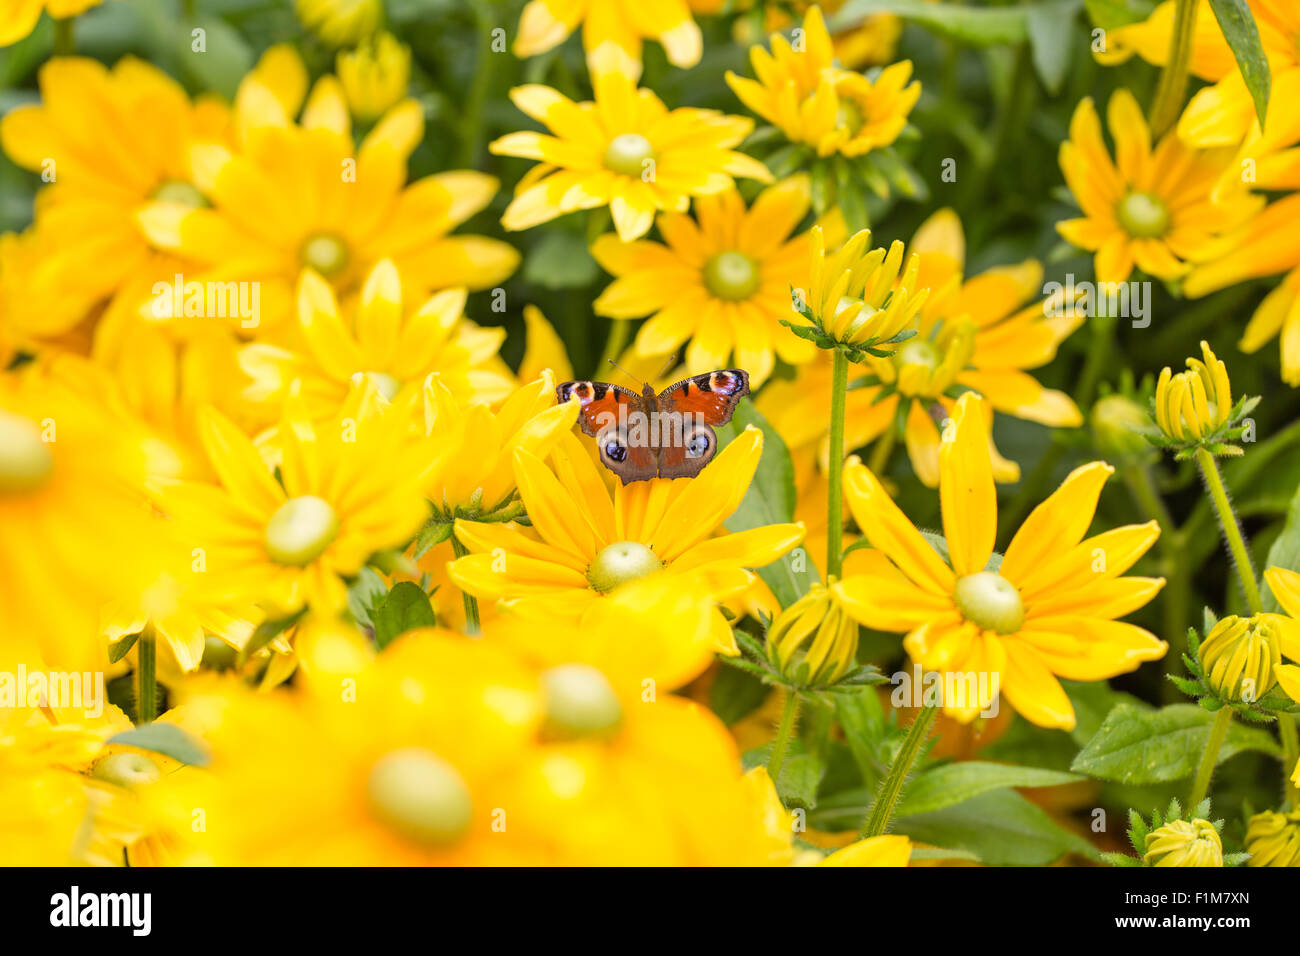 Papillon Paon européenne elle-même au soleil sur une fleur jaune Banque D'Images